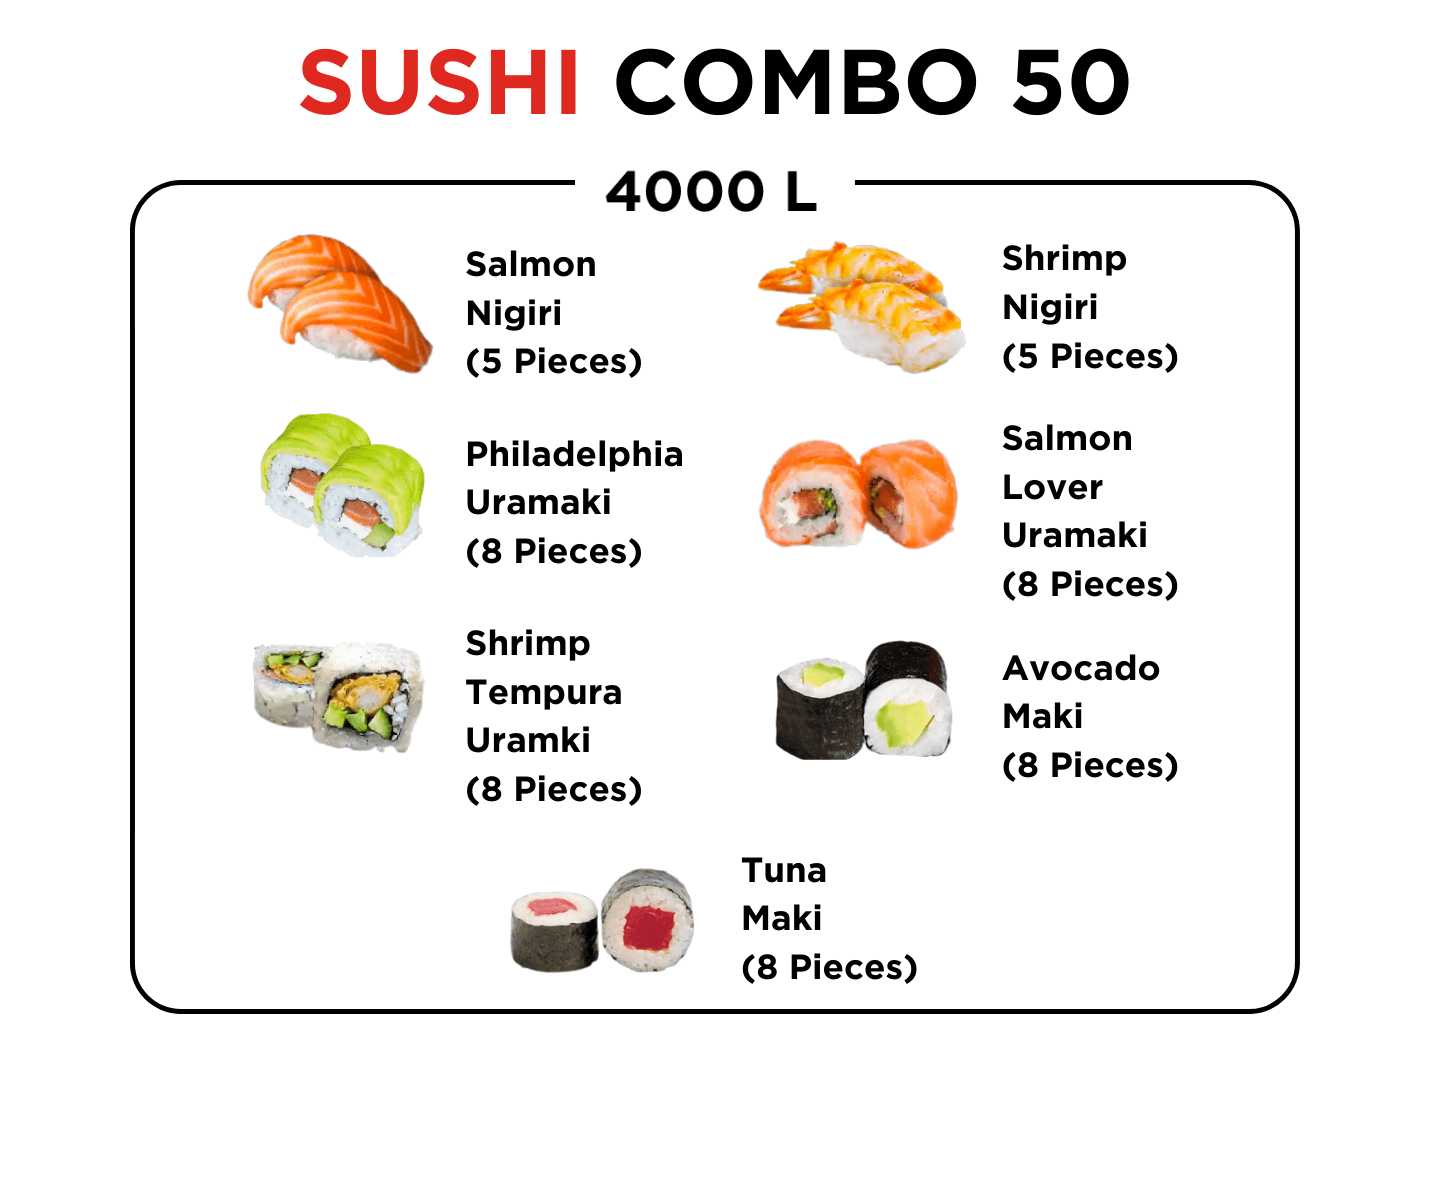 Sushi Combo 50